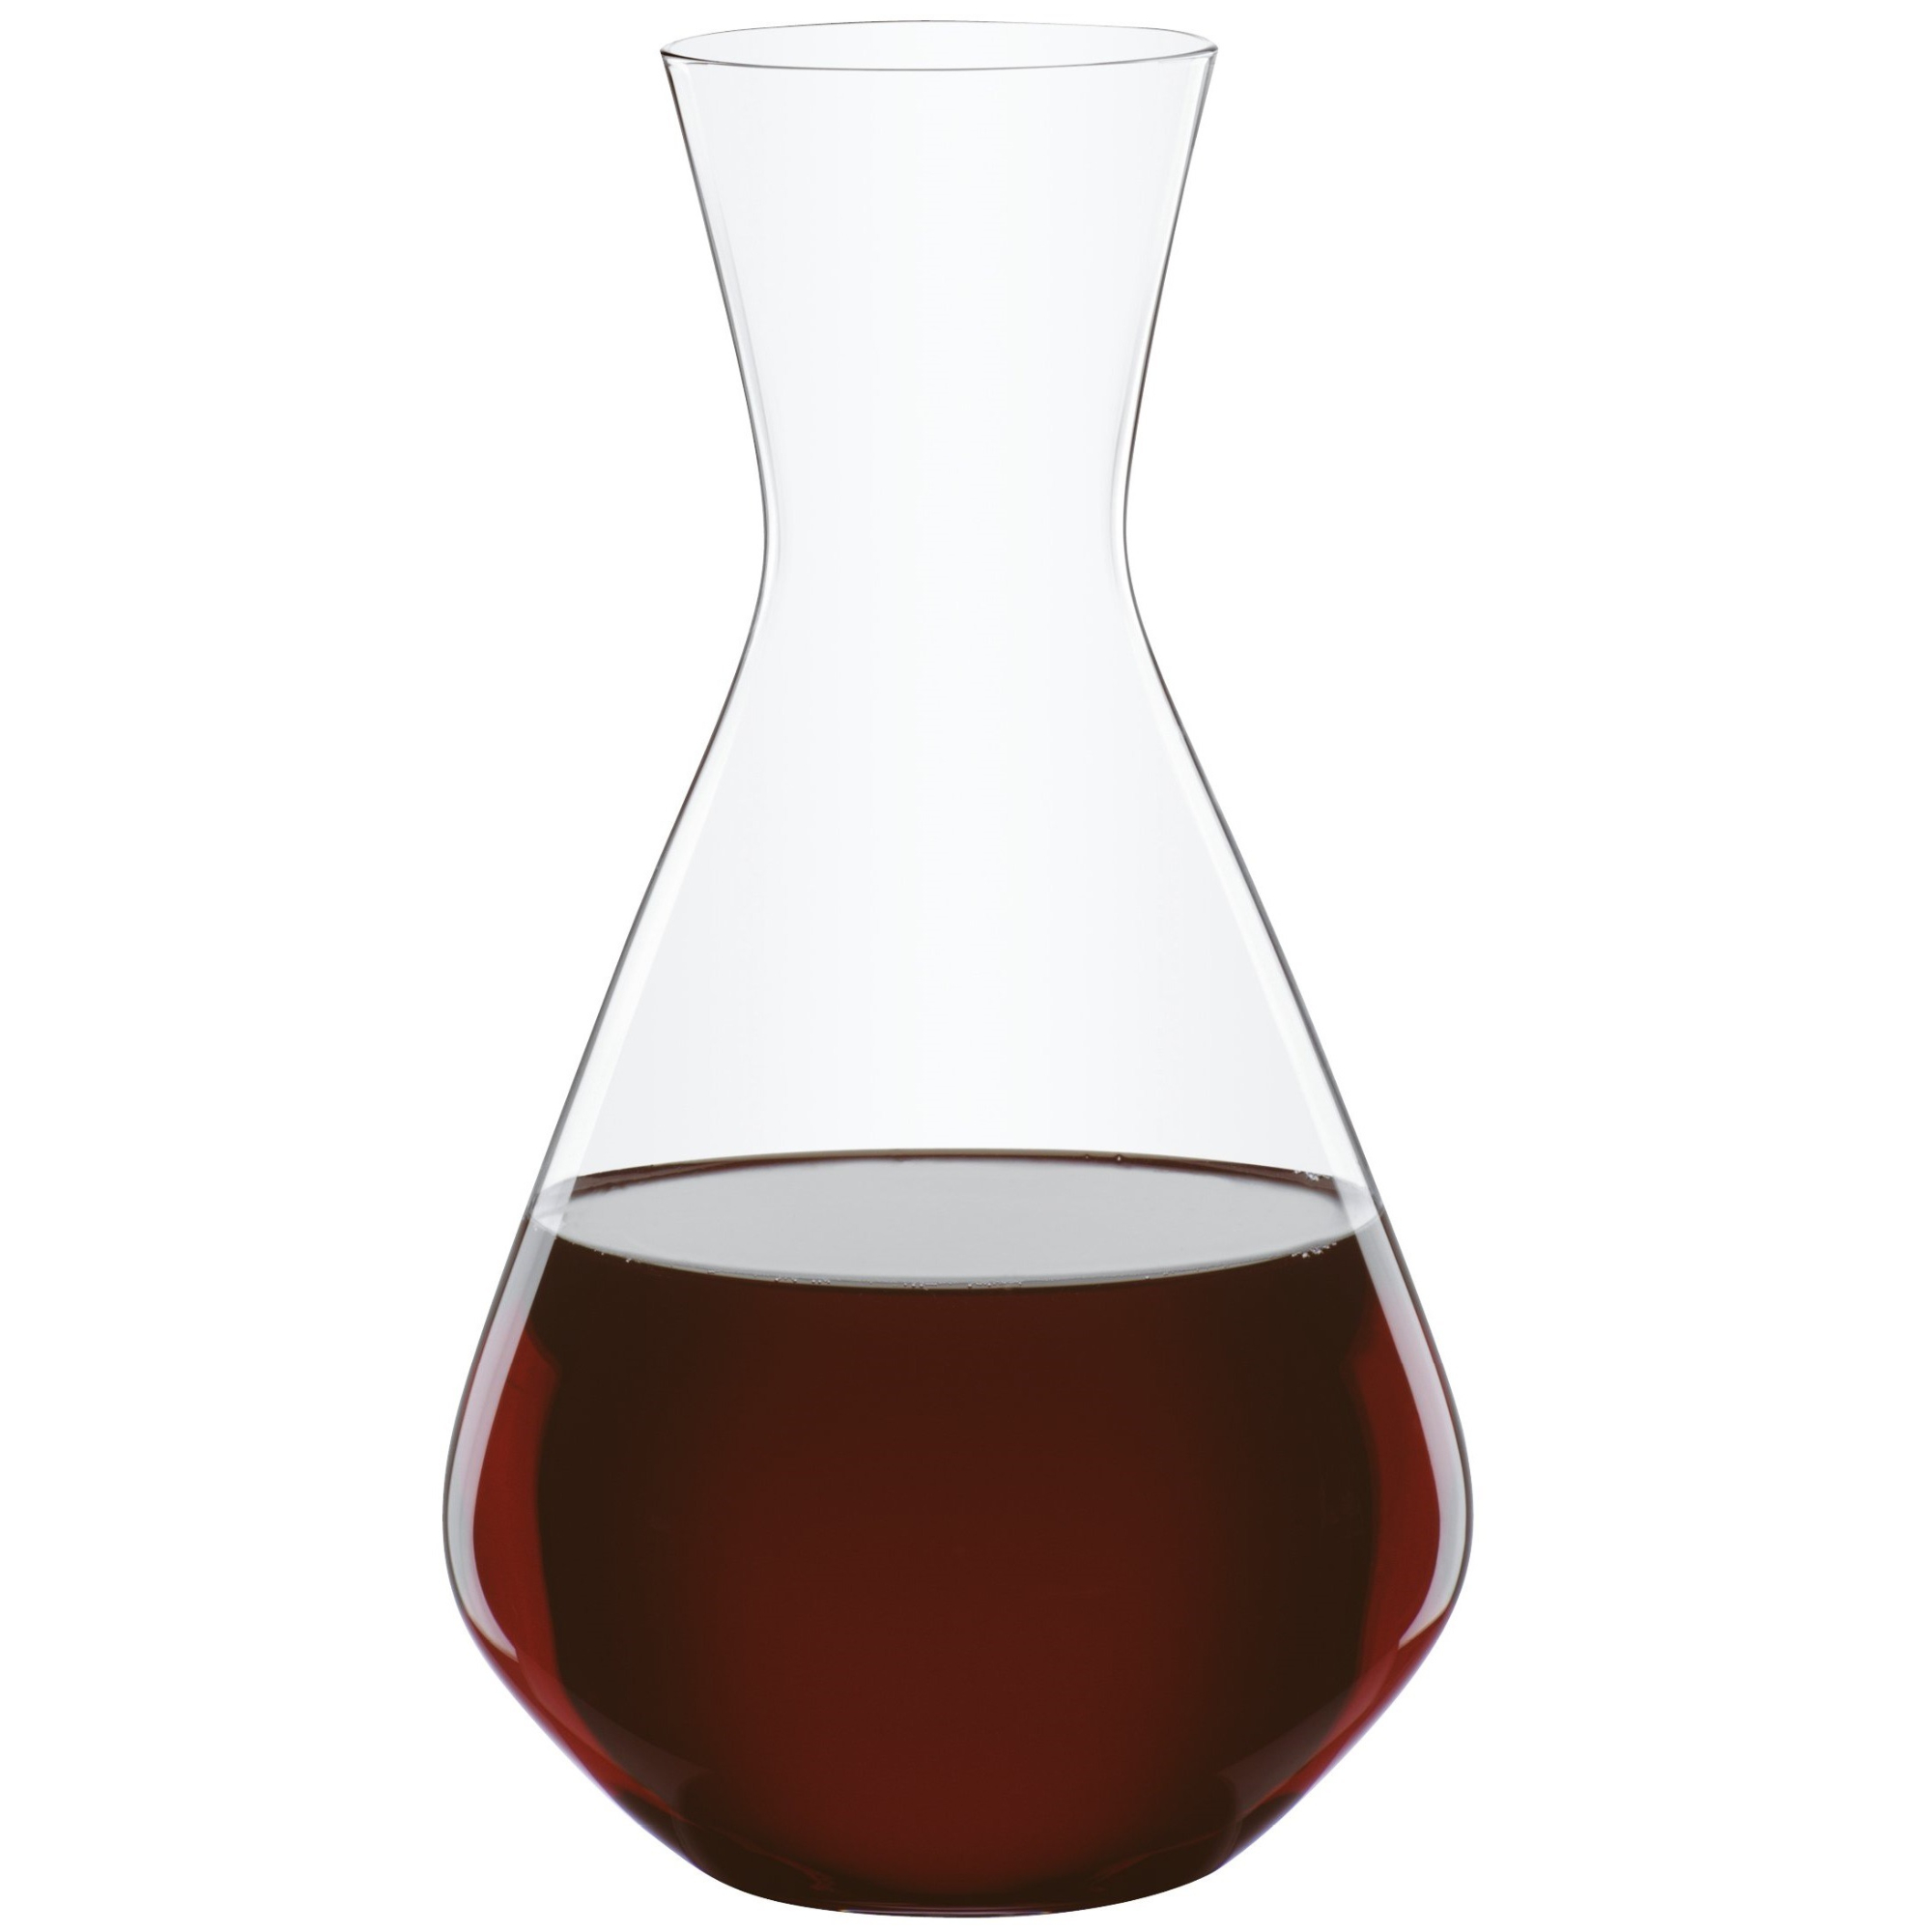 Декантер для вина Spiegelau Casual Entertaining, 1,4 л декантер для вина spiegelau definition 1 л